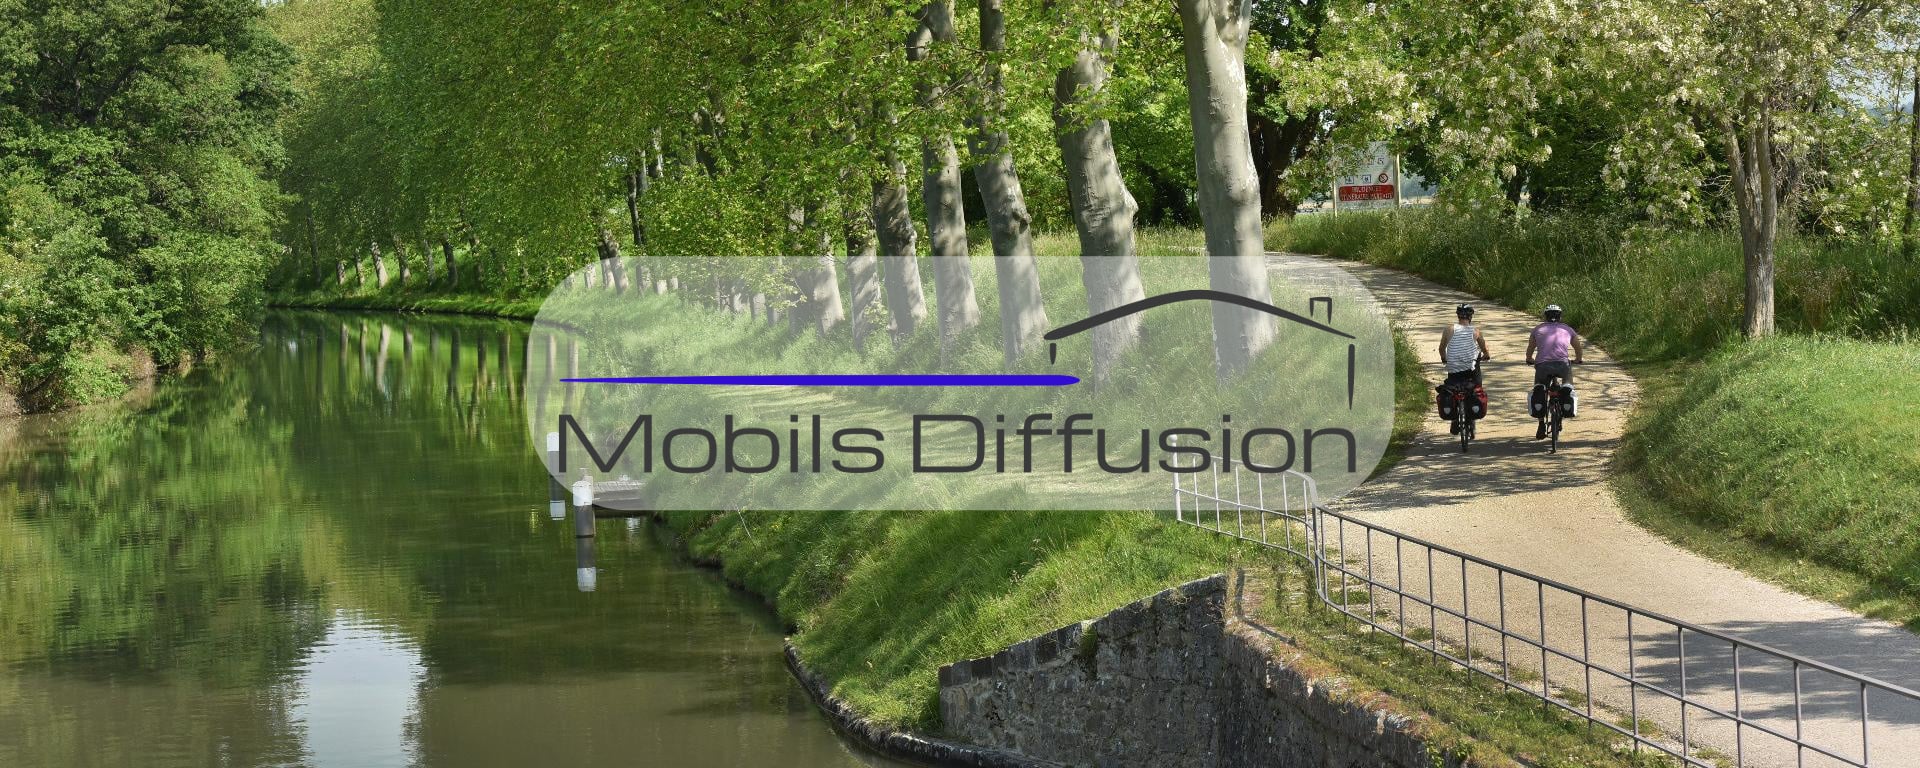 Mobils Diffusion - Vente et achat de mobil-home près de Béziers (34)